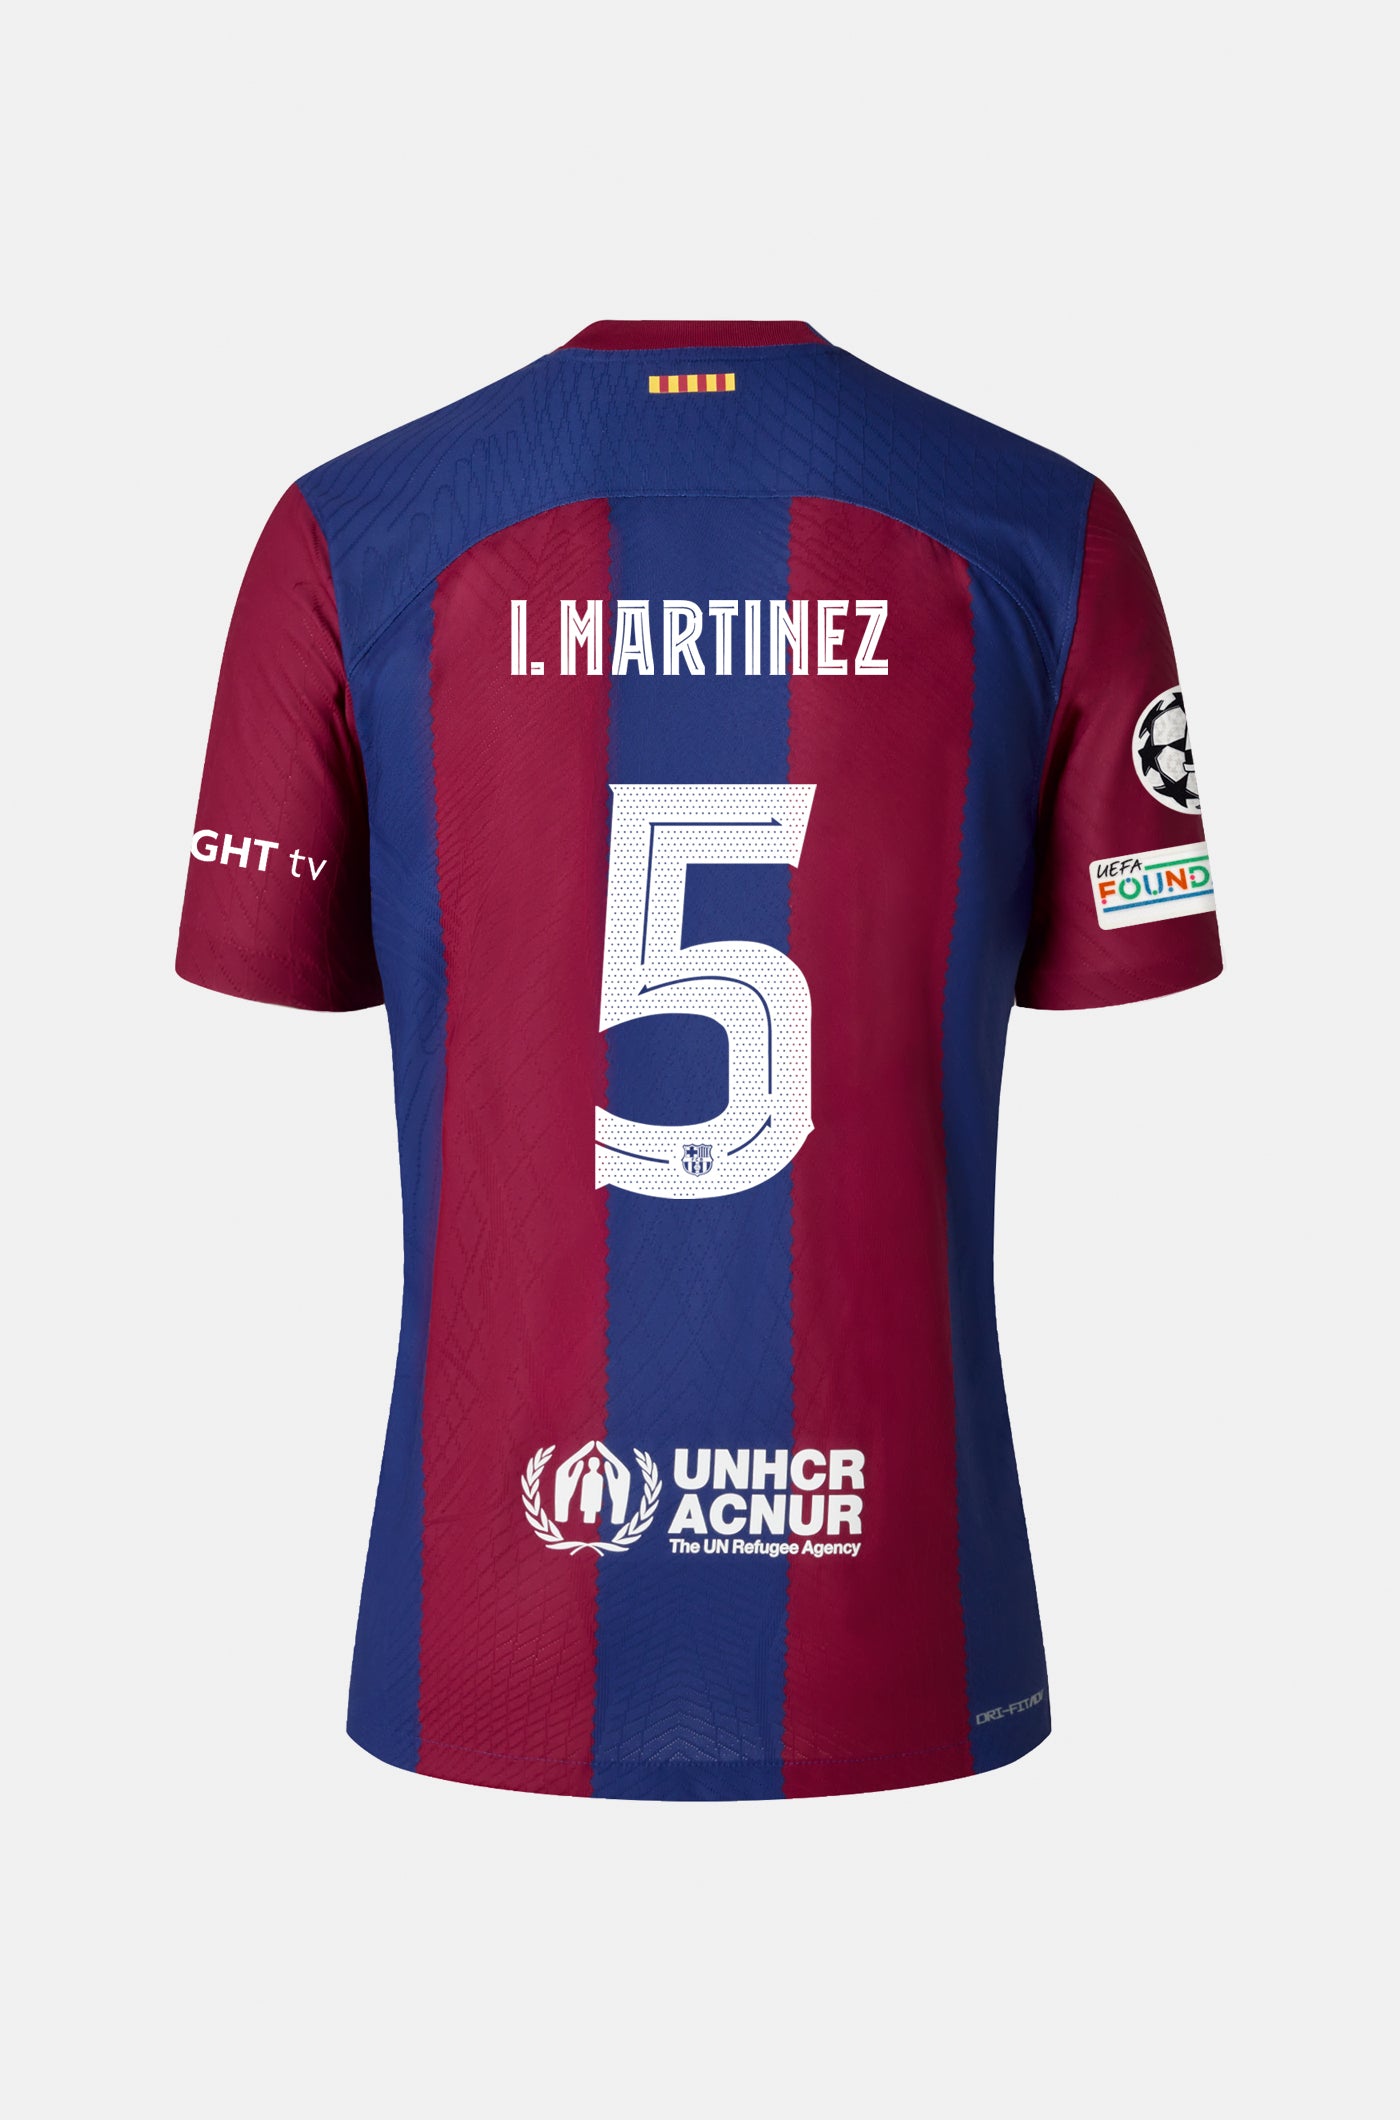 UCL FC Barcelona home shirt 23/24 - Long-sleeve - I. MARTÍNEZ